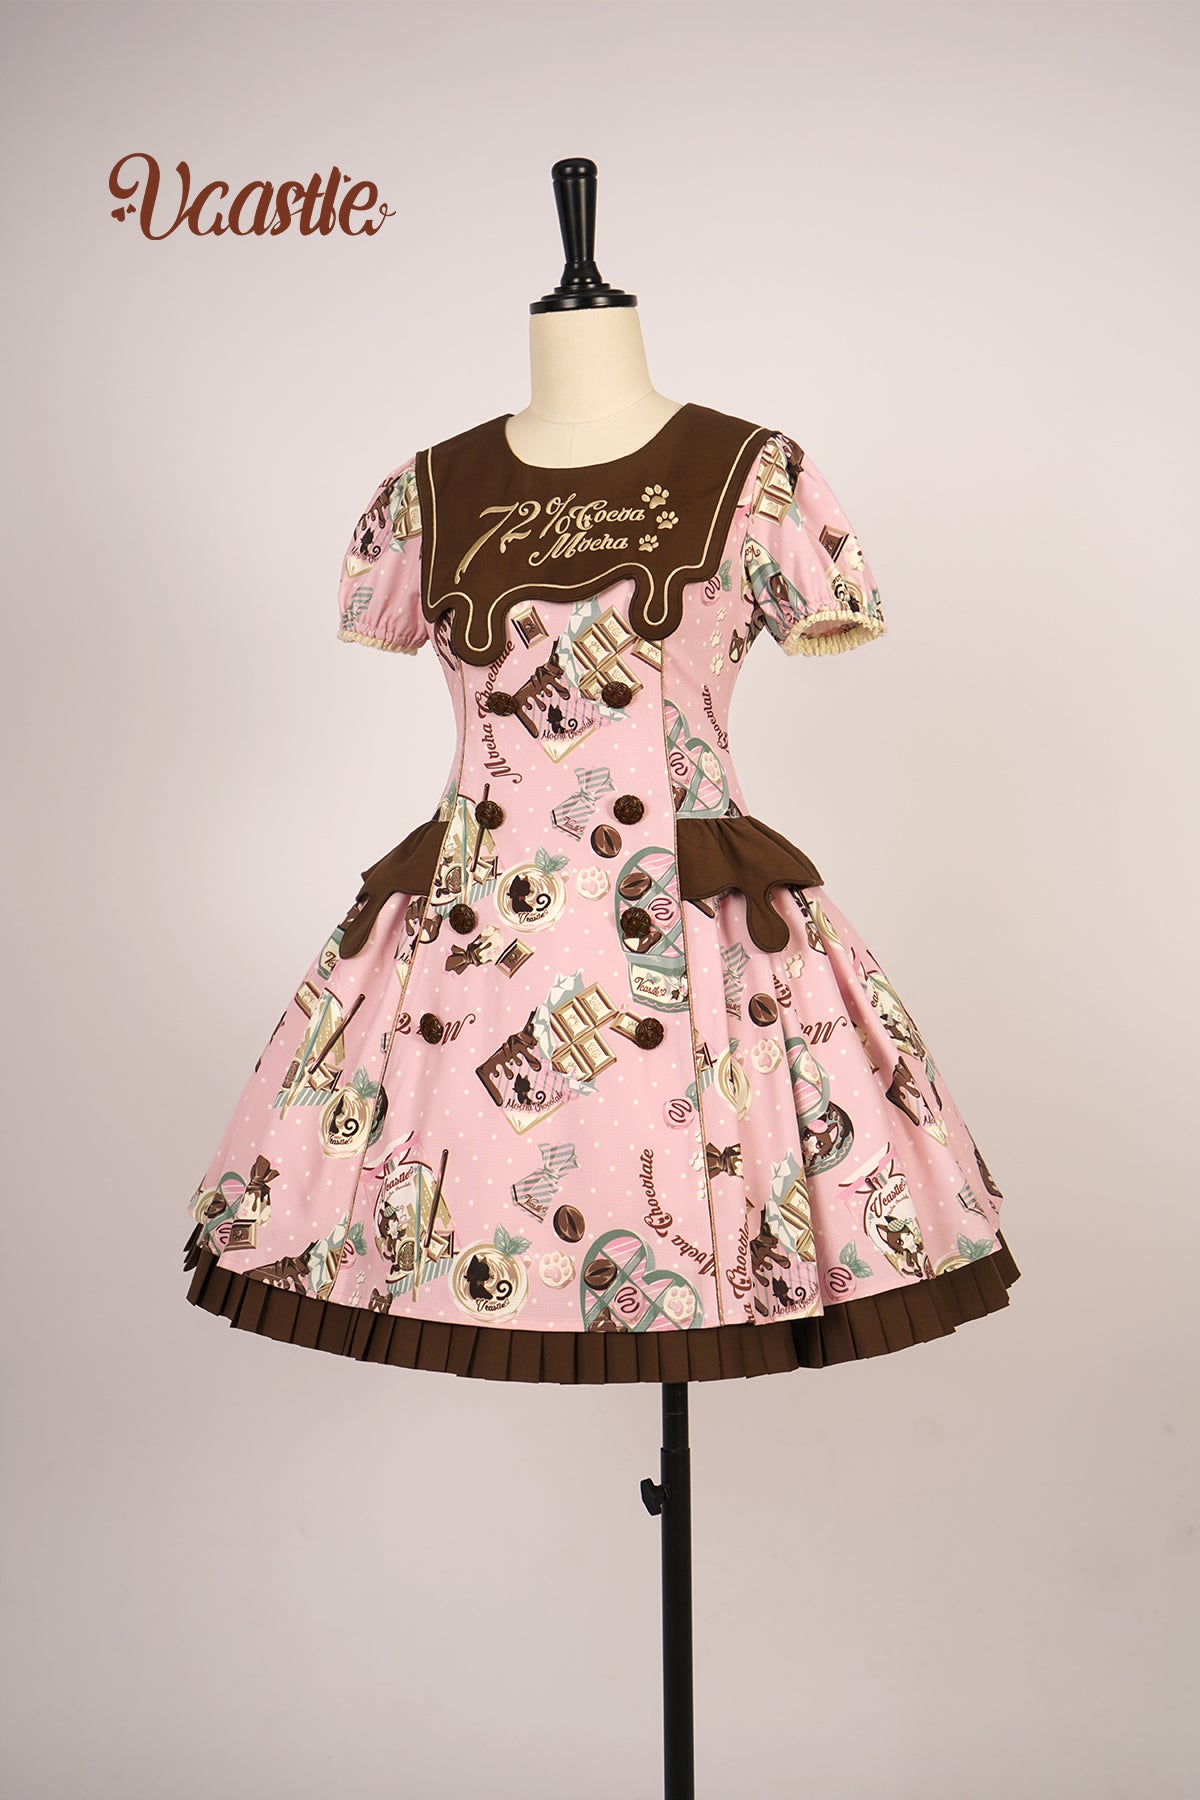 Vcastle~Mocha Choc~Kawaii Lolita OP Dress Multicolors S pink OP 